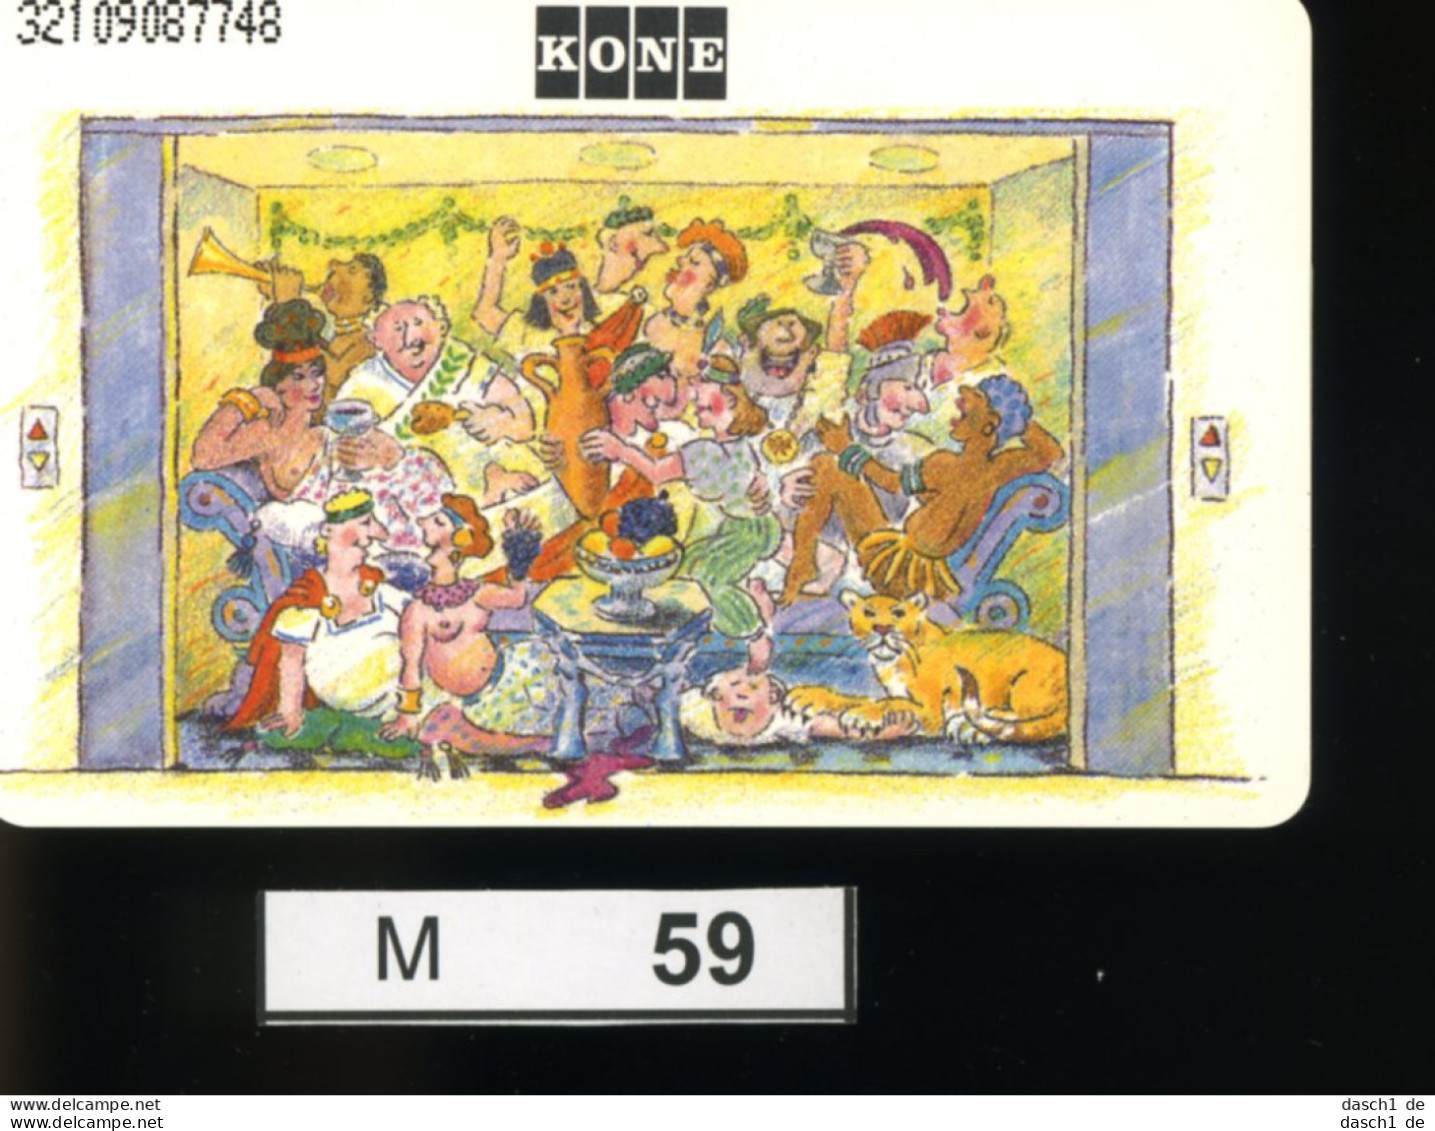 M059, Deutschland, TK, Sonderkarte Kone Aufzug, 12 DM, 1992 - K-Series : Série Clients